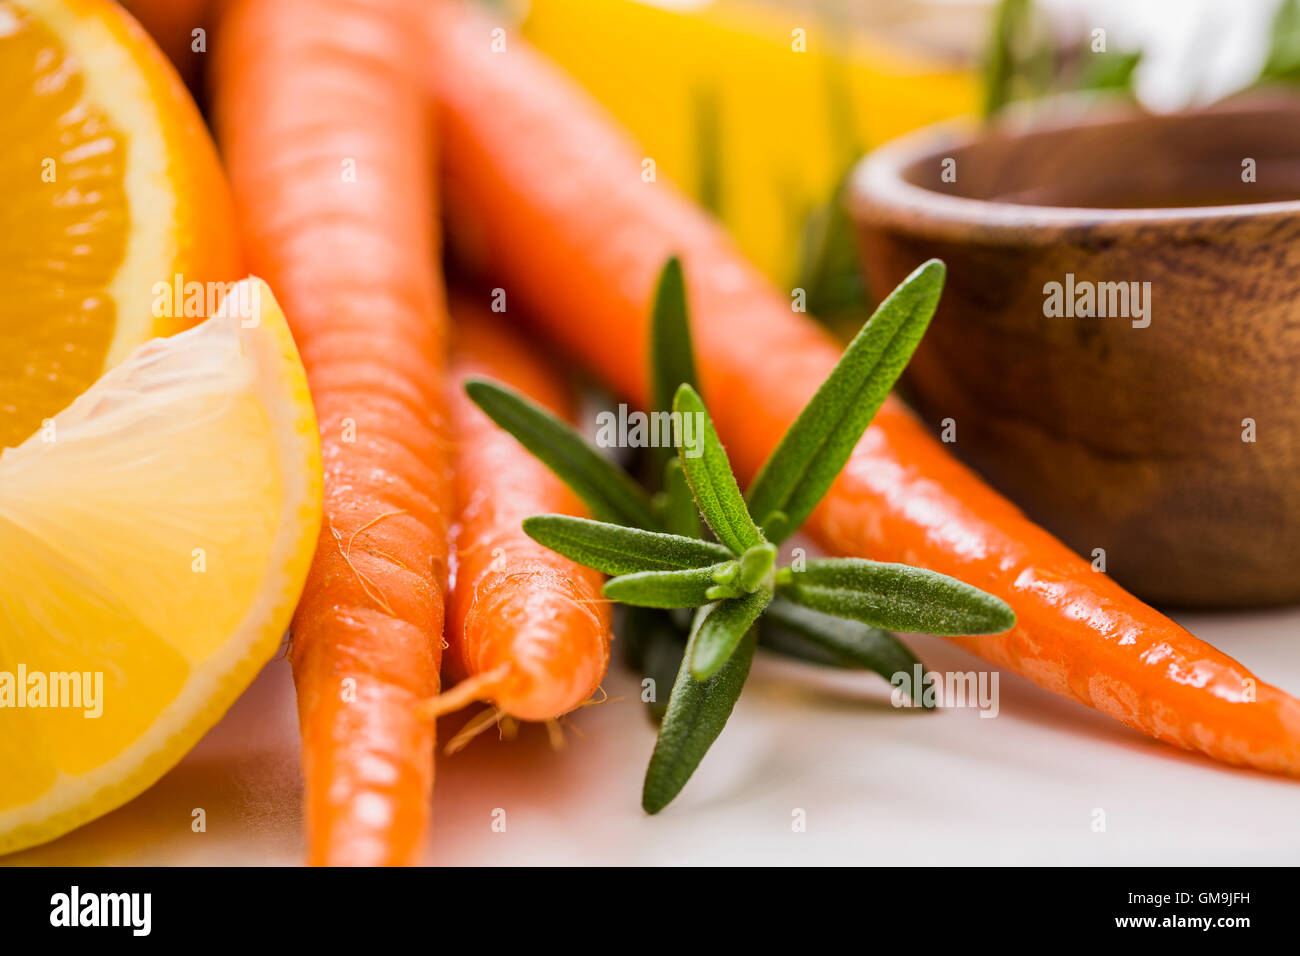 Les carottes et les oranges avec bec Banque D'Images